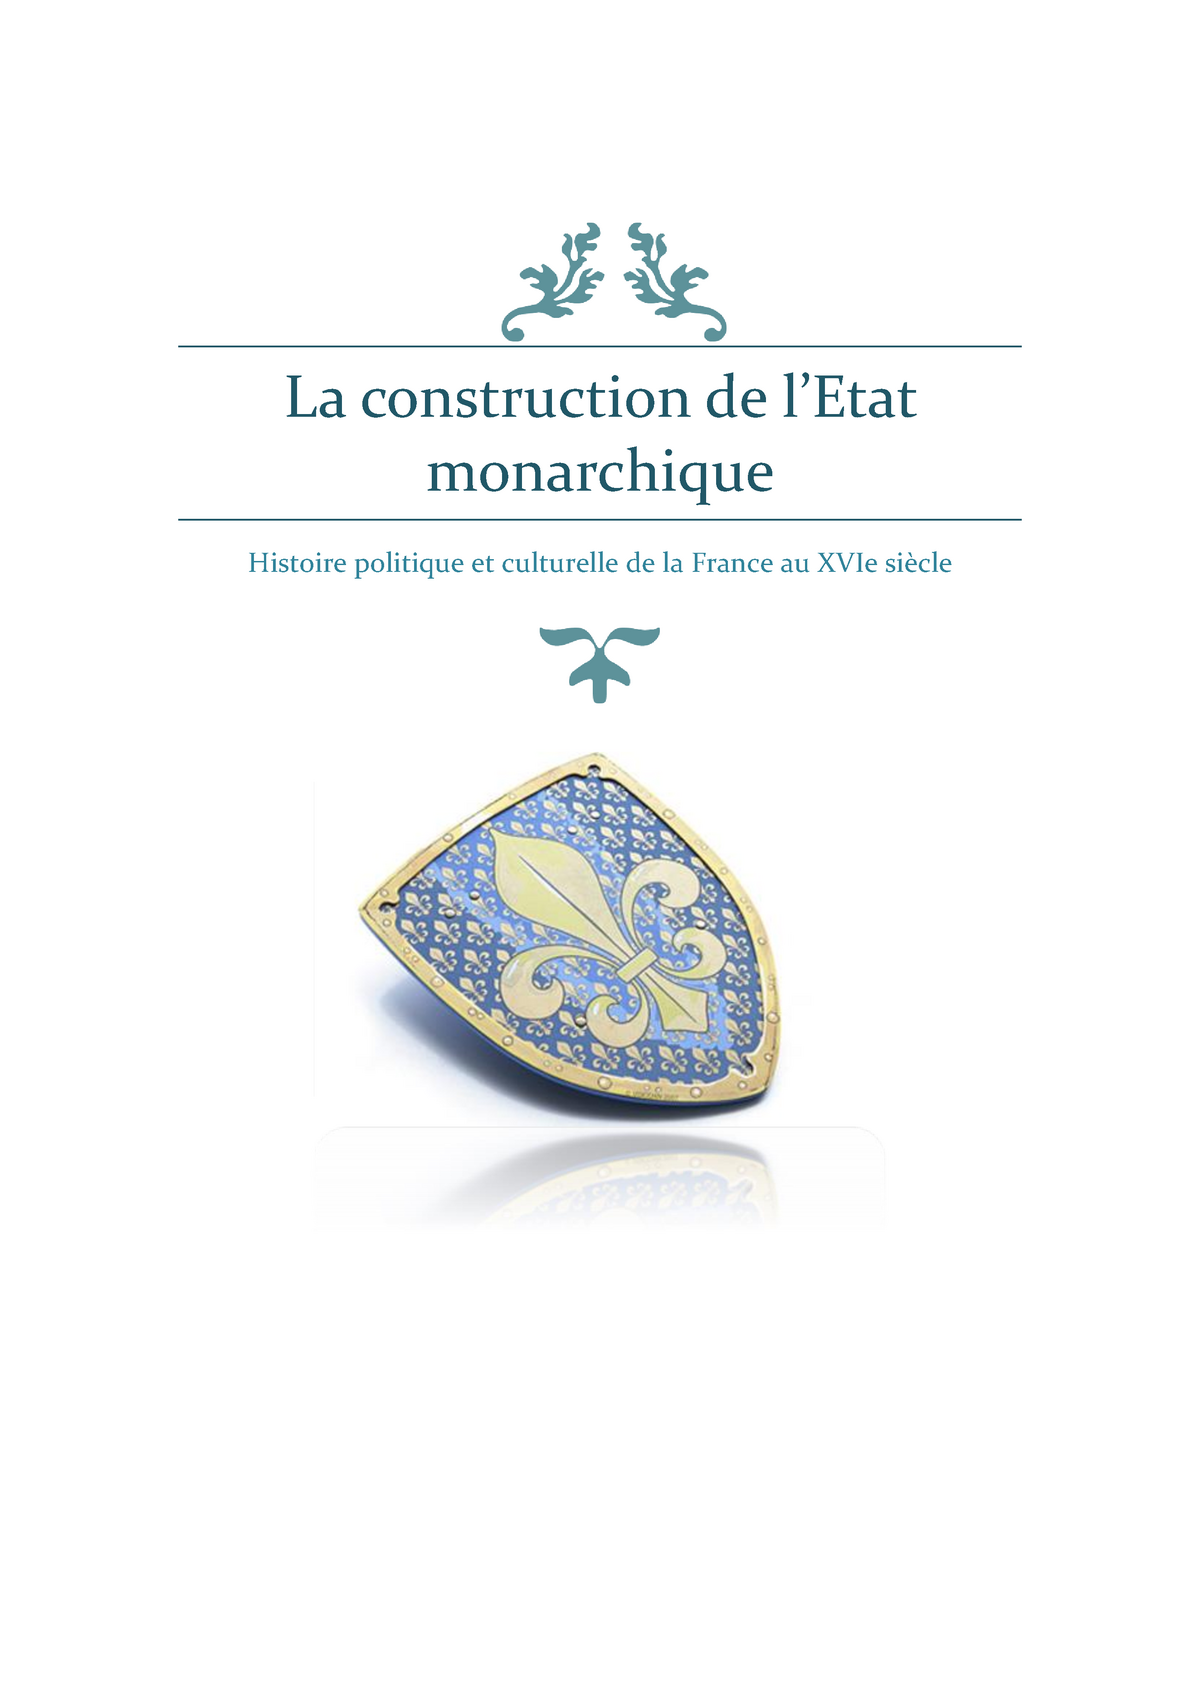  La construction de l'Etat monarchique en France de